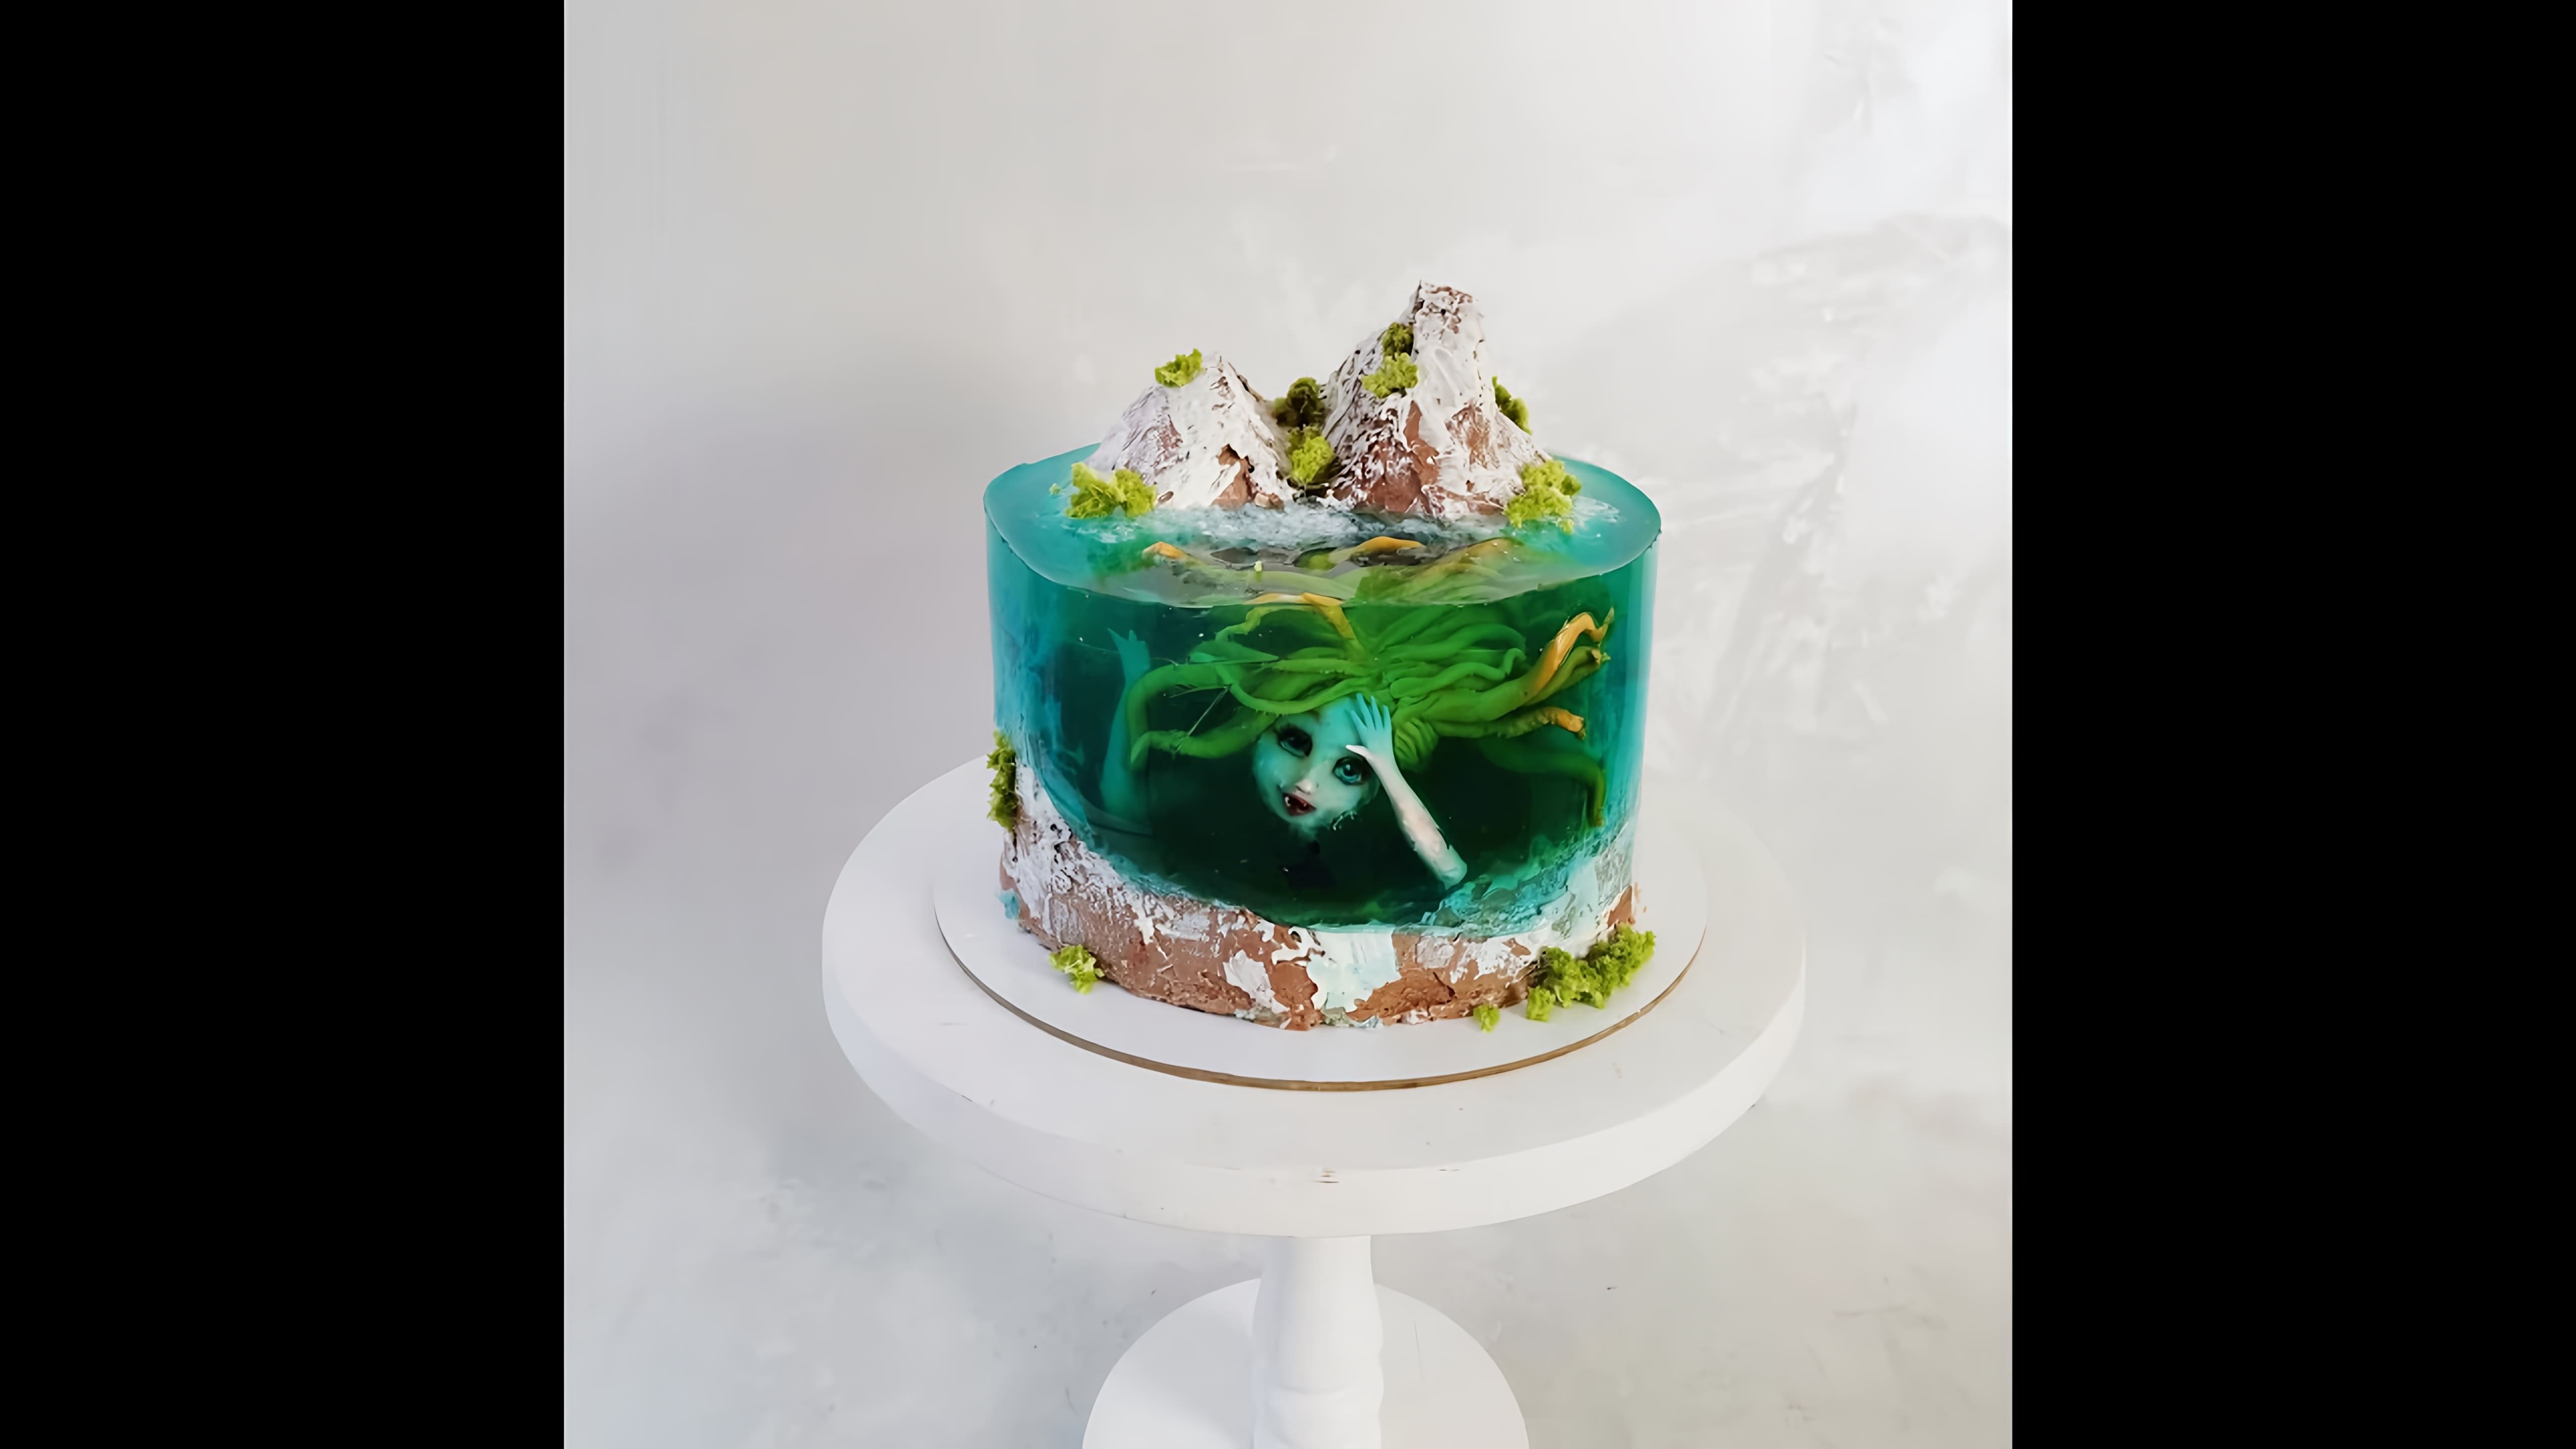 В этом видео демонстрируется процесс создания торта "Остров" с прослойкой желе и фигуркой русалки